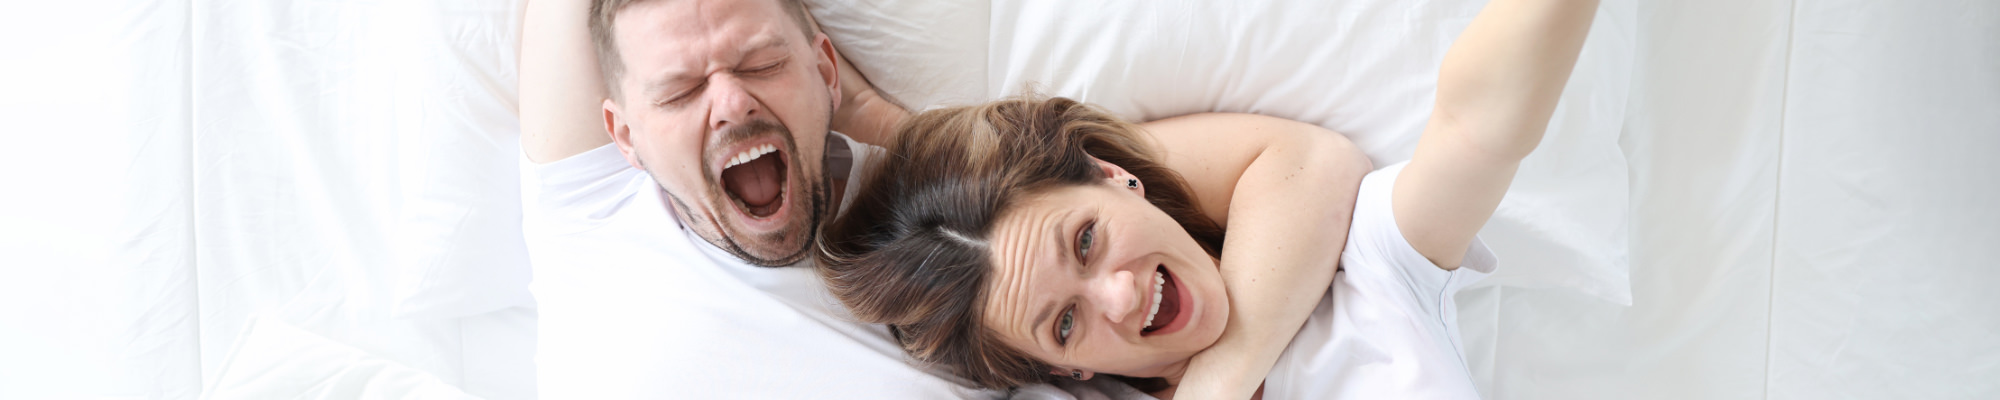 Man en vrouw liggen samen in een heerlijk hotelbed